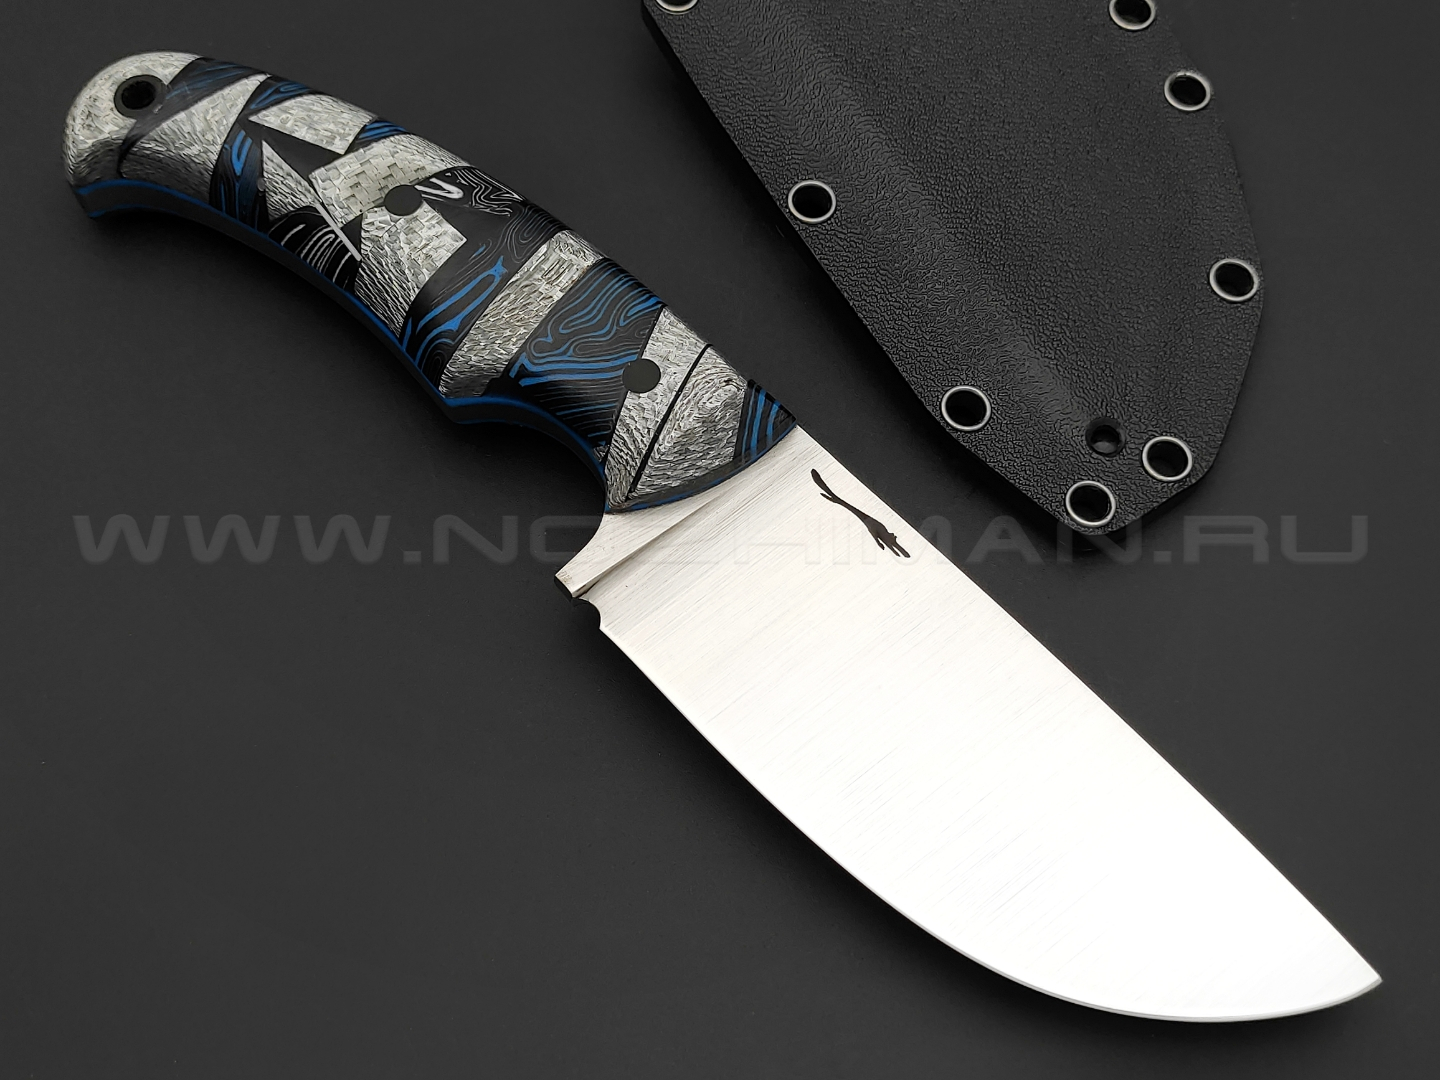 Волчий Век нож Шихан сталь 95X18 WA satin, рукоять кастомный комбинированный G10